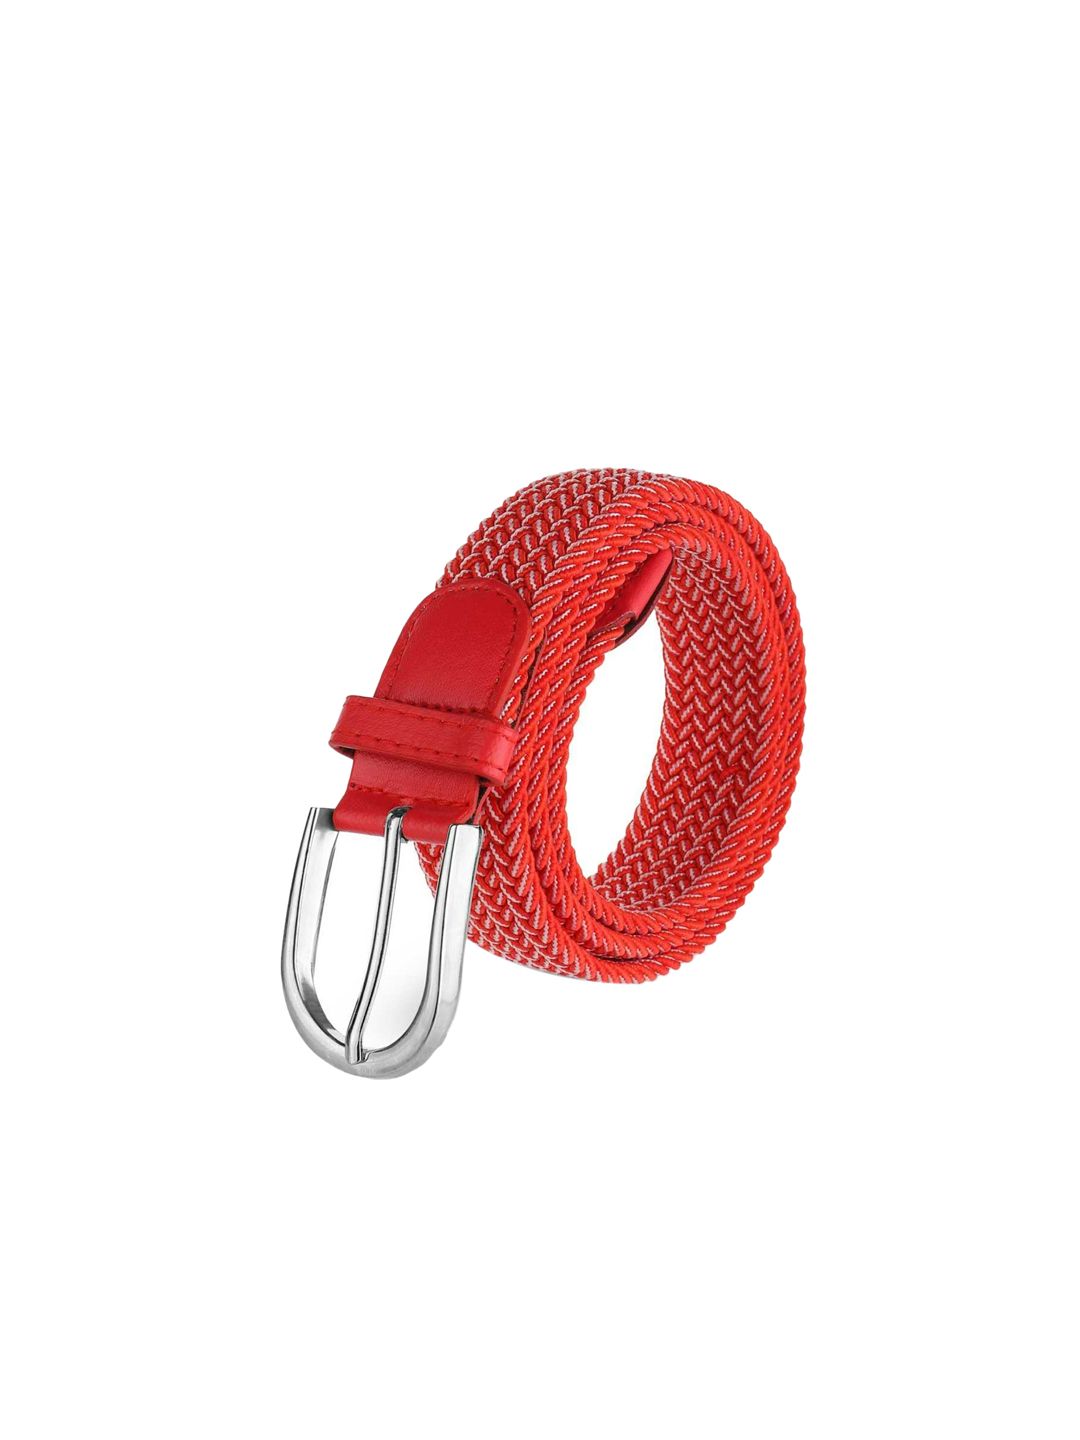 Elite Crafts Unisex Red Belt Price in India